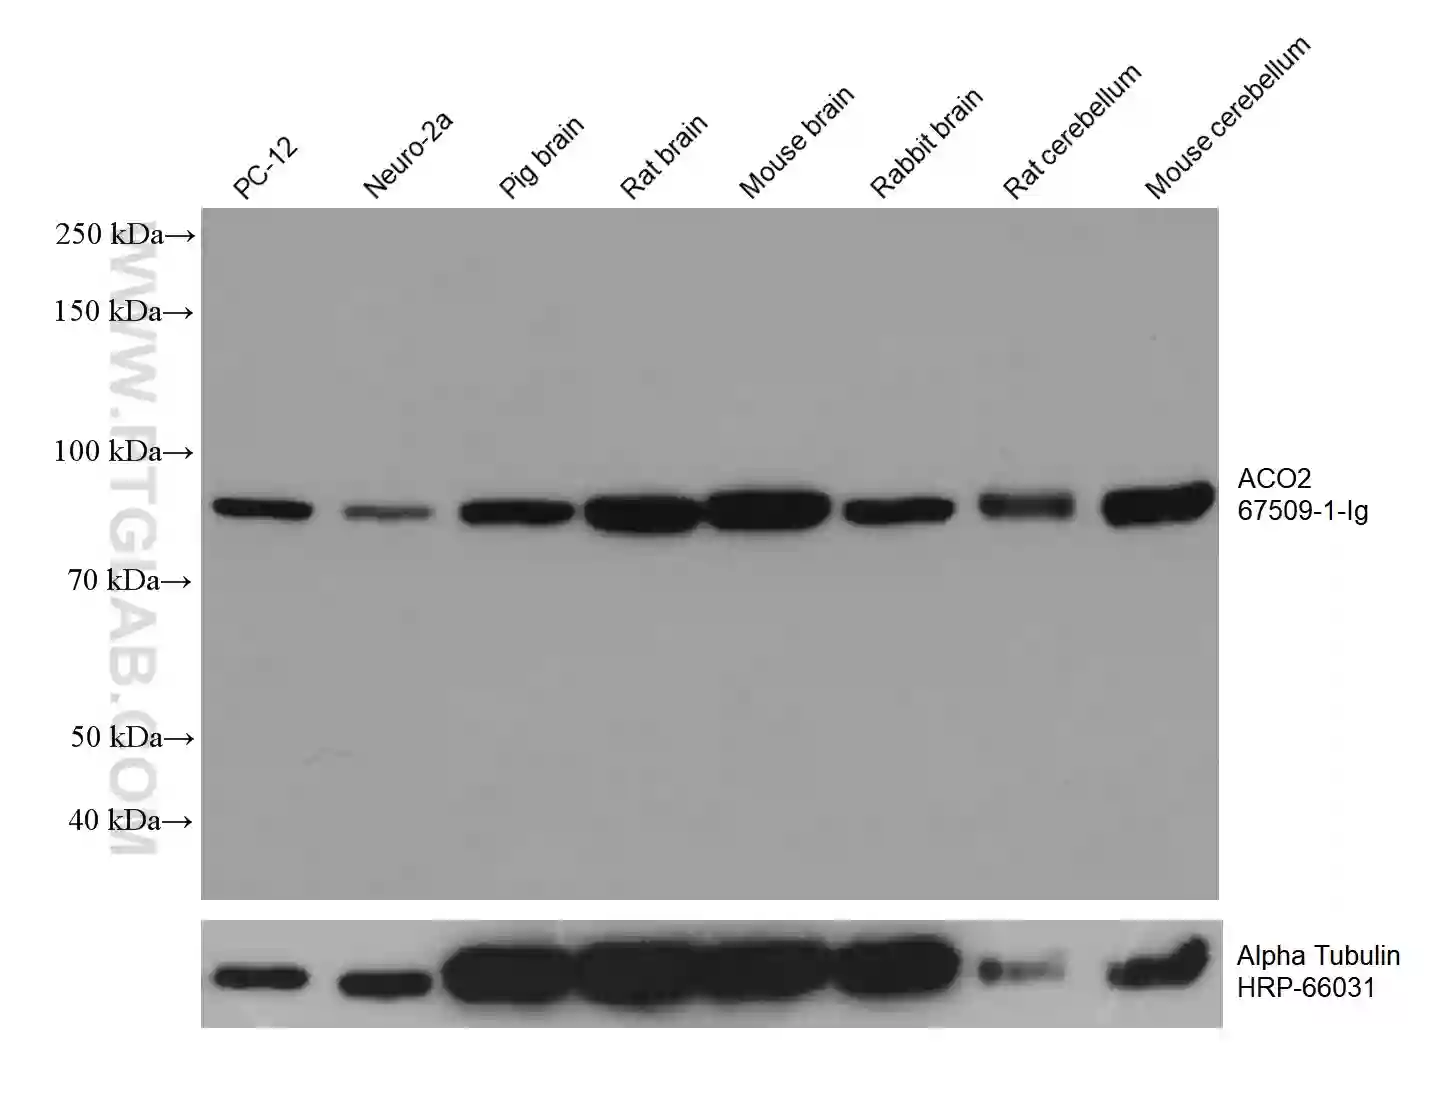 ACO2 antibody (67509-1-Ig) | Proteintech